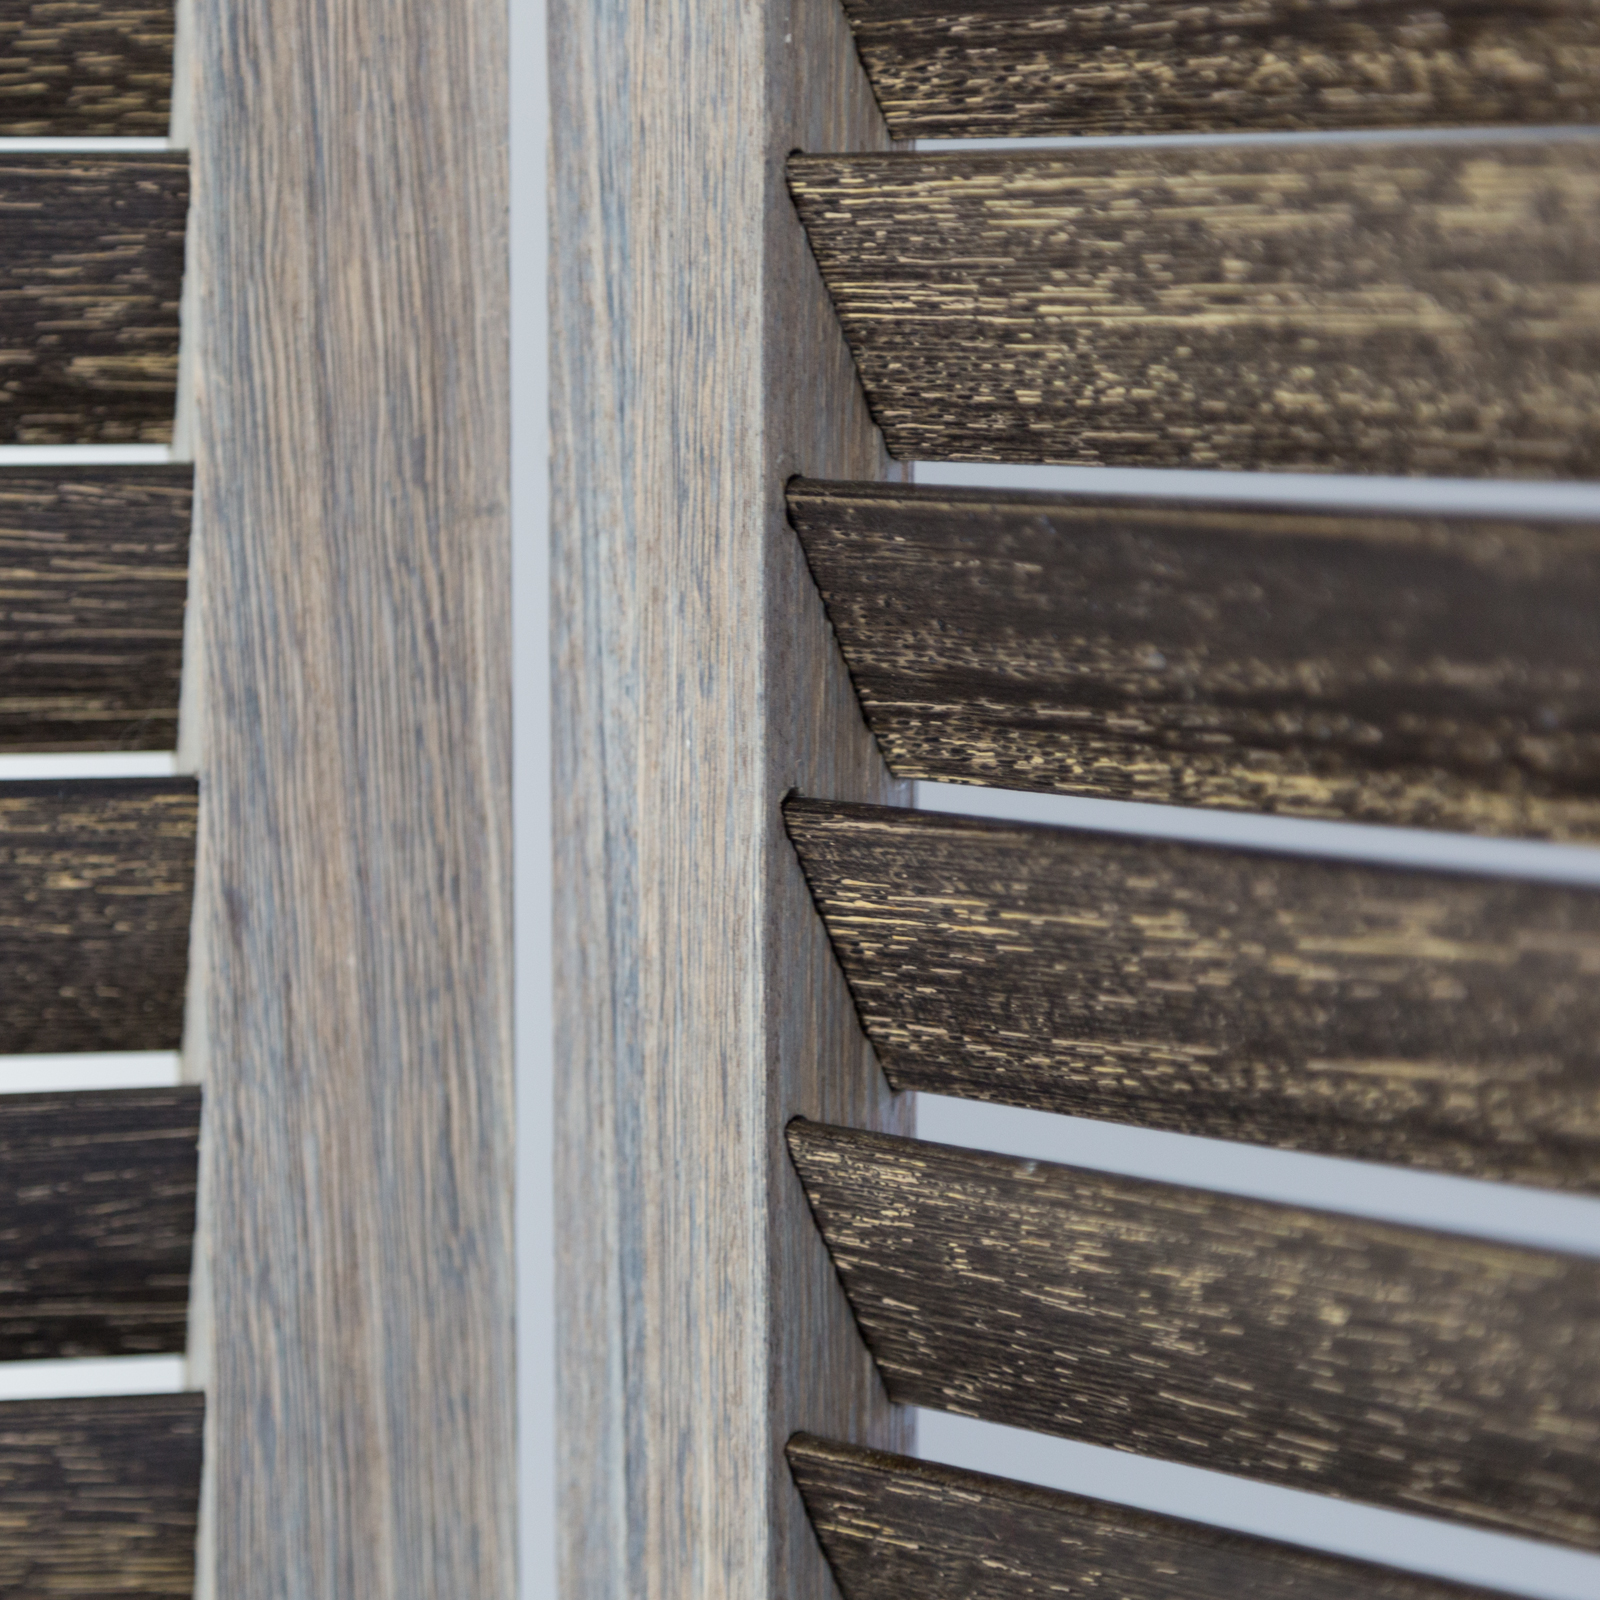 Paravent Raumteiler 3 teilig Holz Trennwand Sichtschutz Braun Grau